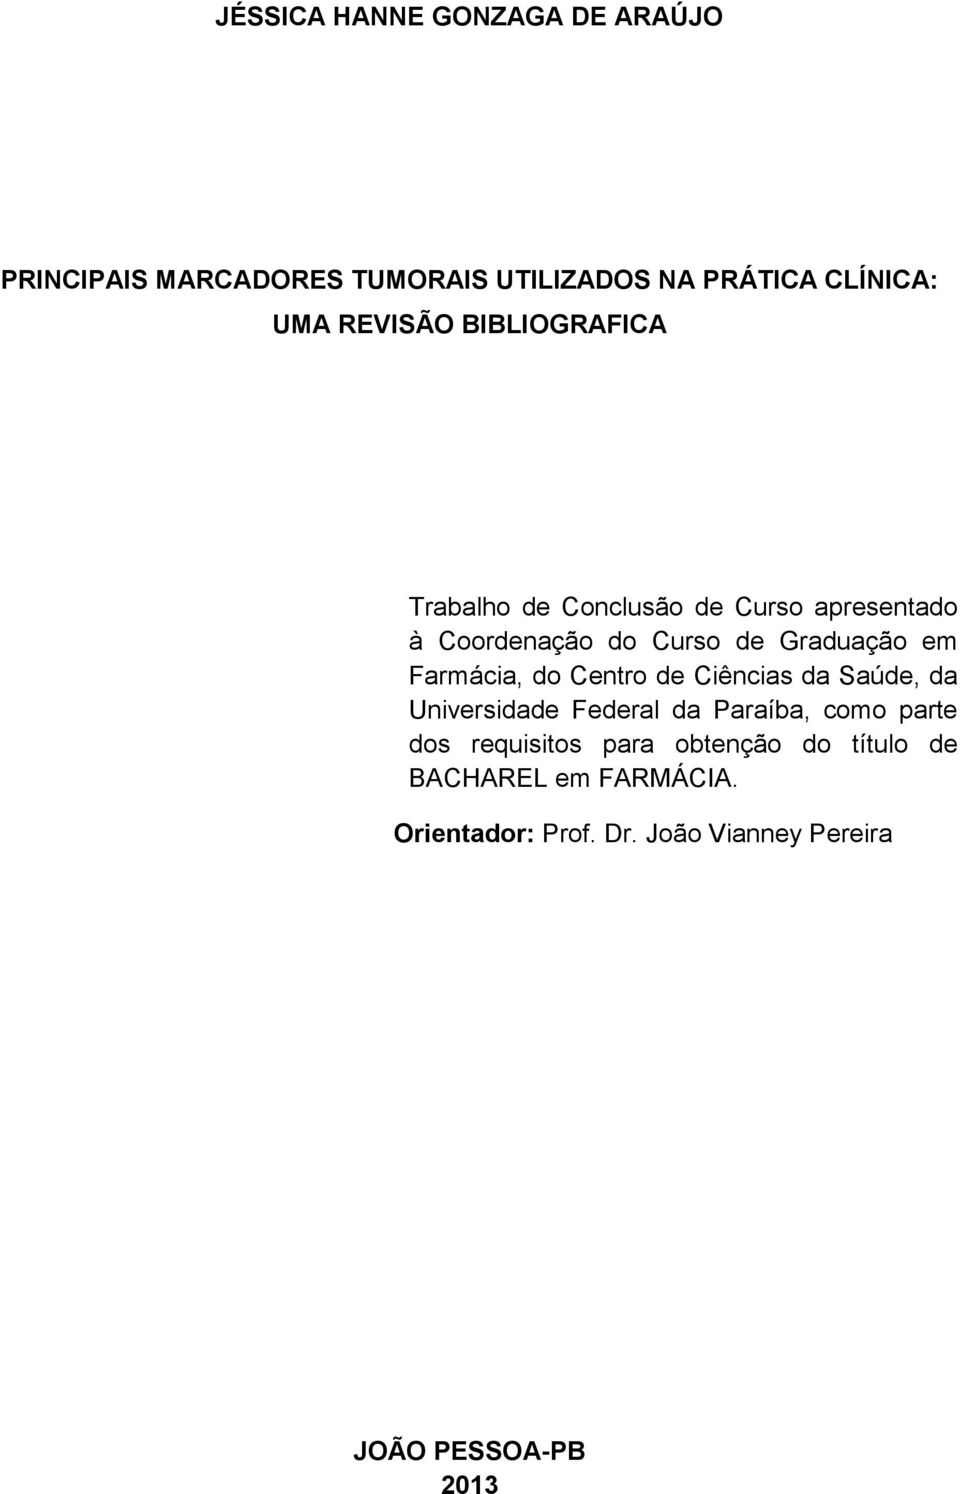 Coordenação do Curso de Graduação em Farmácia, do Centro de Ciências da Saúde, da Universidade Federal da Paraíba, como